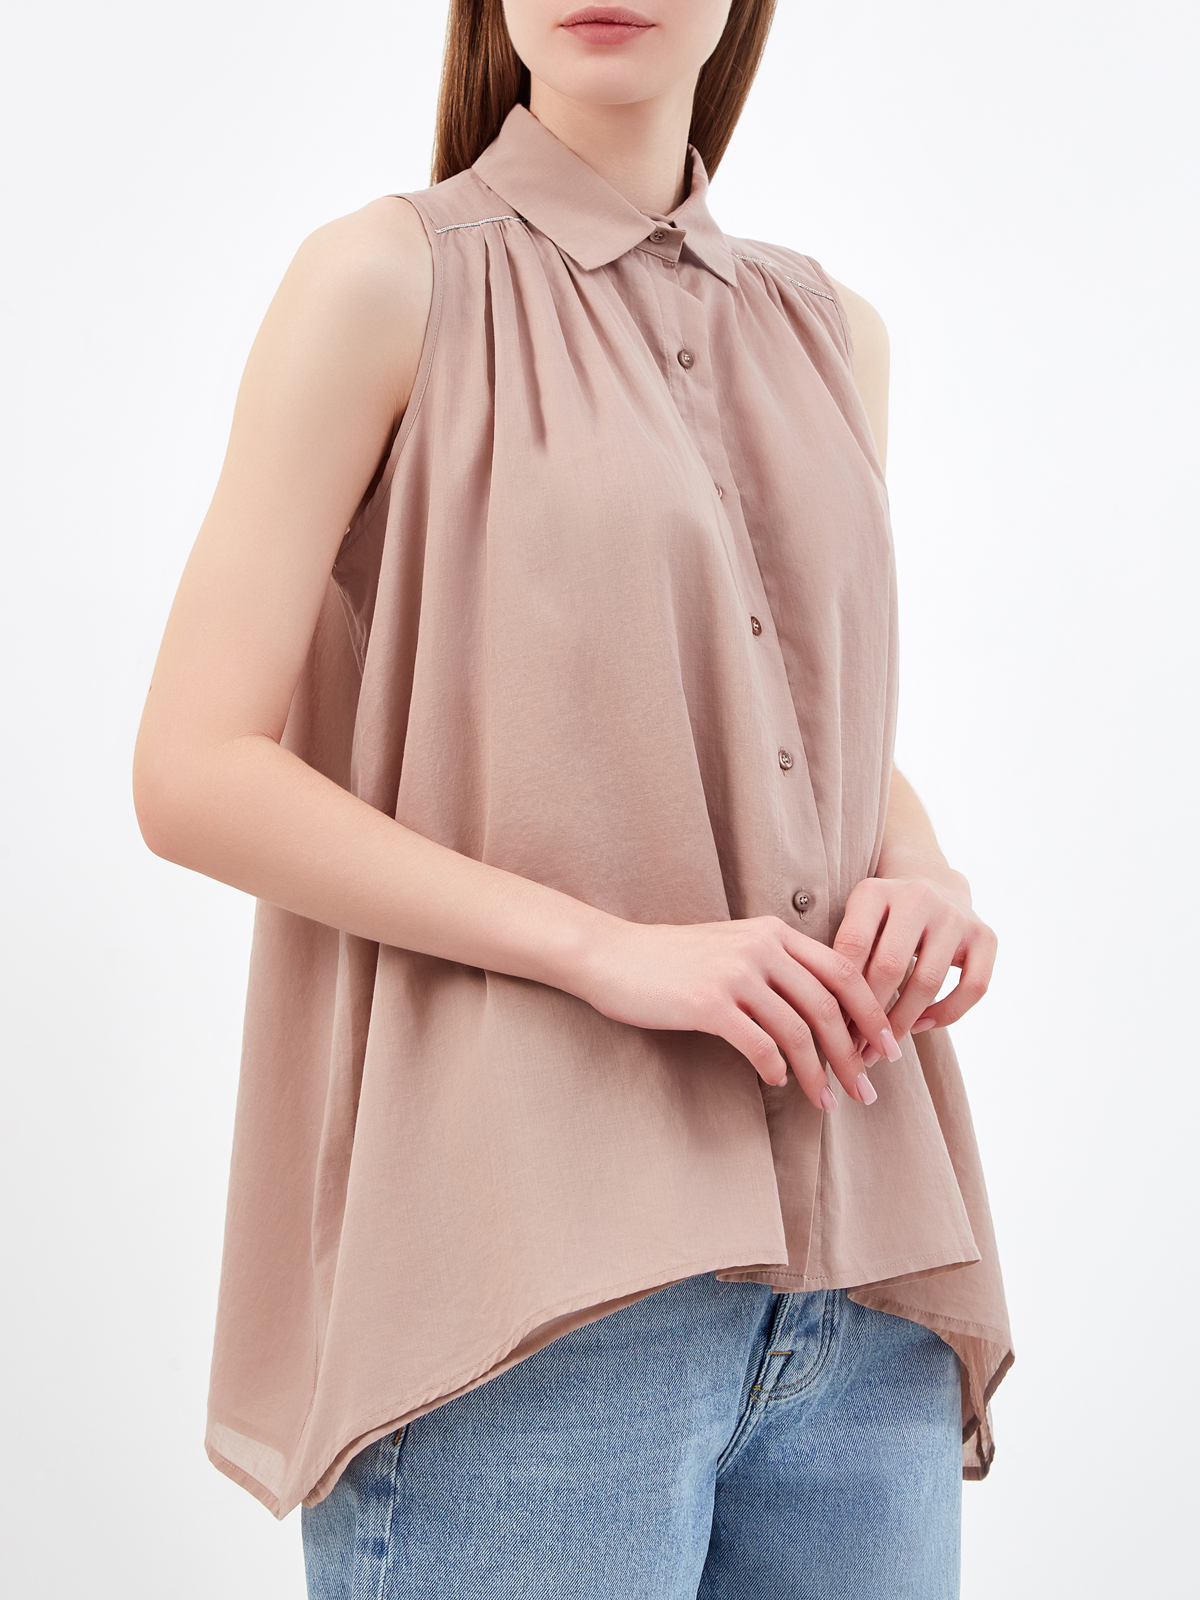 Асимметричная блуза без рукавов из тонкого хлопка PESERICO, цвет бежевый, размер 40;42;44;46;38 - фото 3